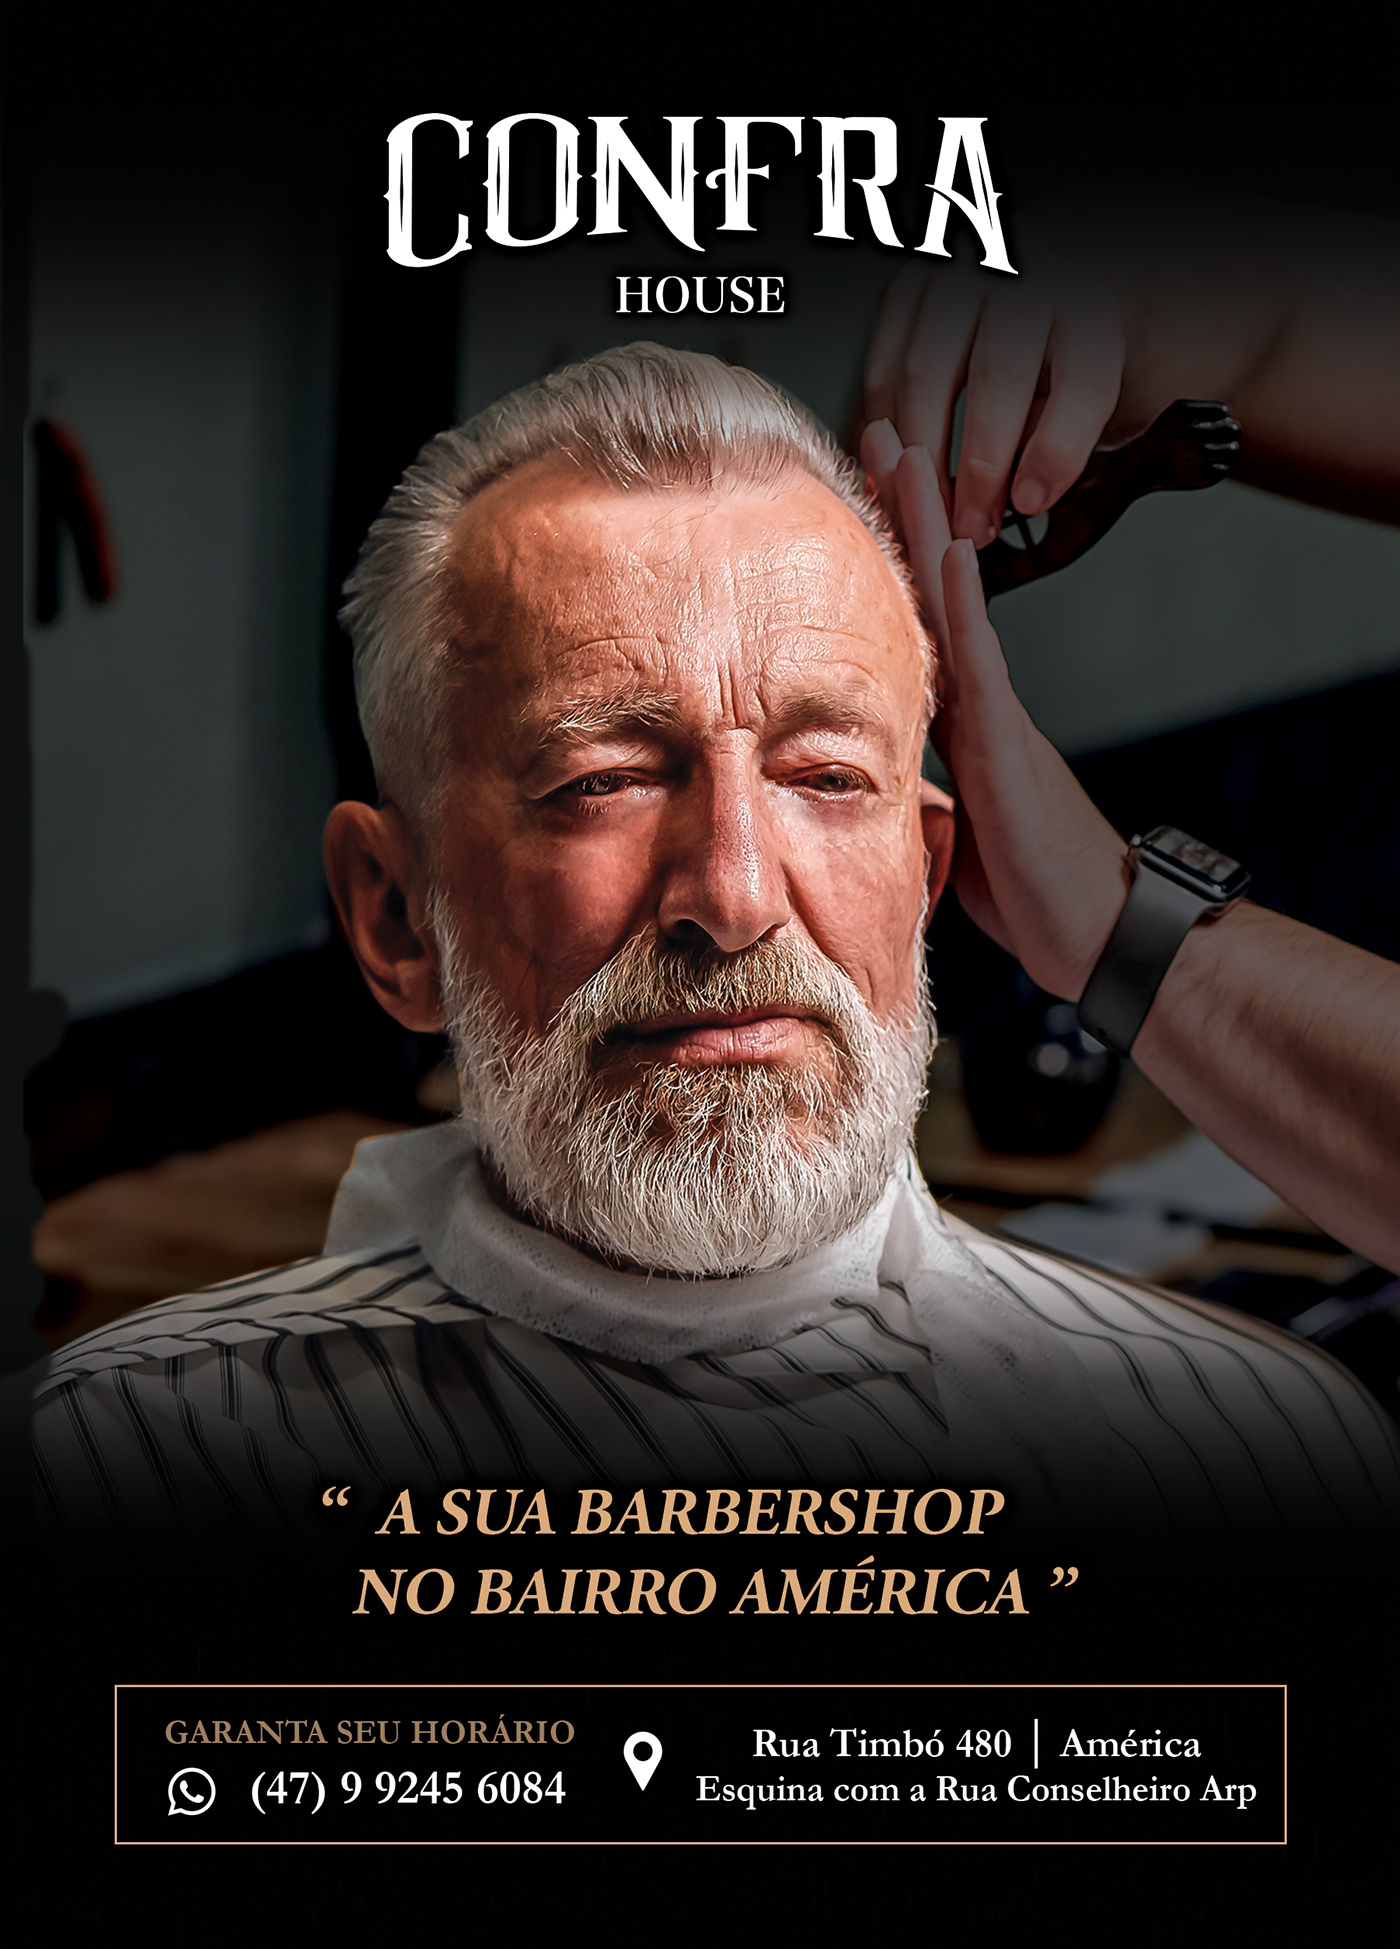 barbearia barber CONFRA flyer panfleto